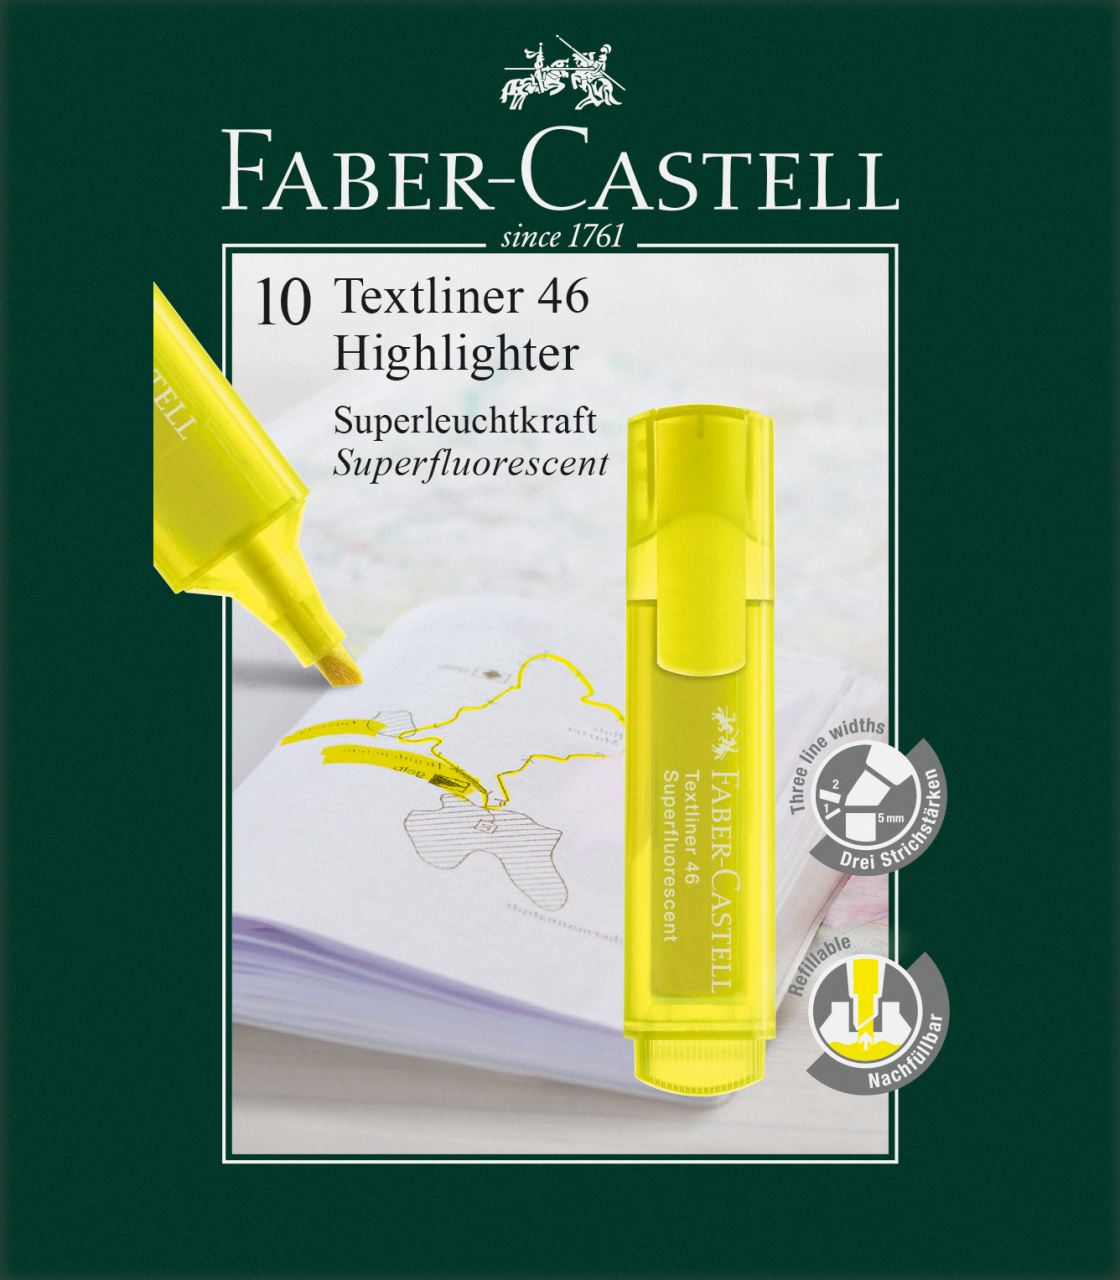 Faber-Castell - Surligneur Textliner 1546 jaune